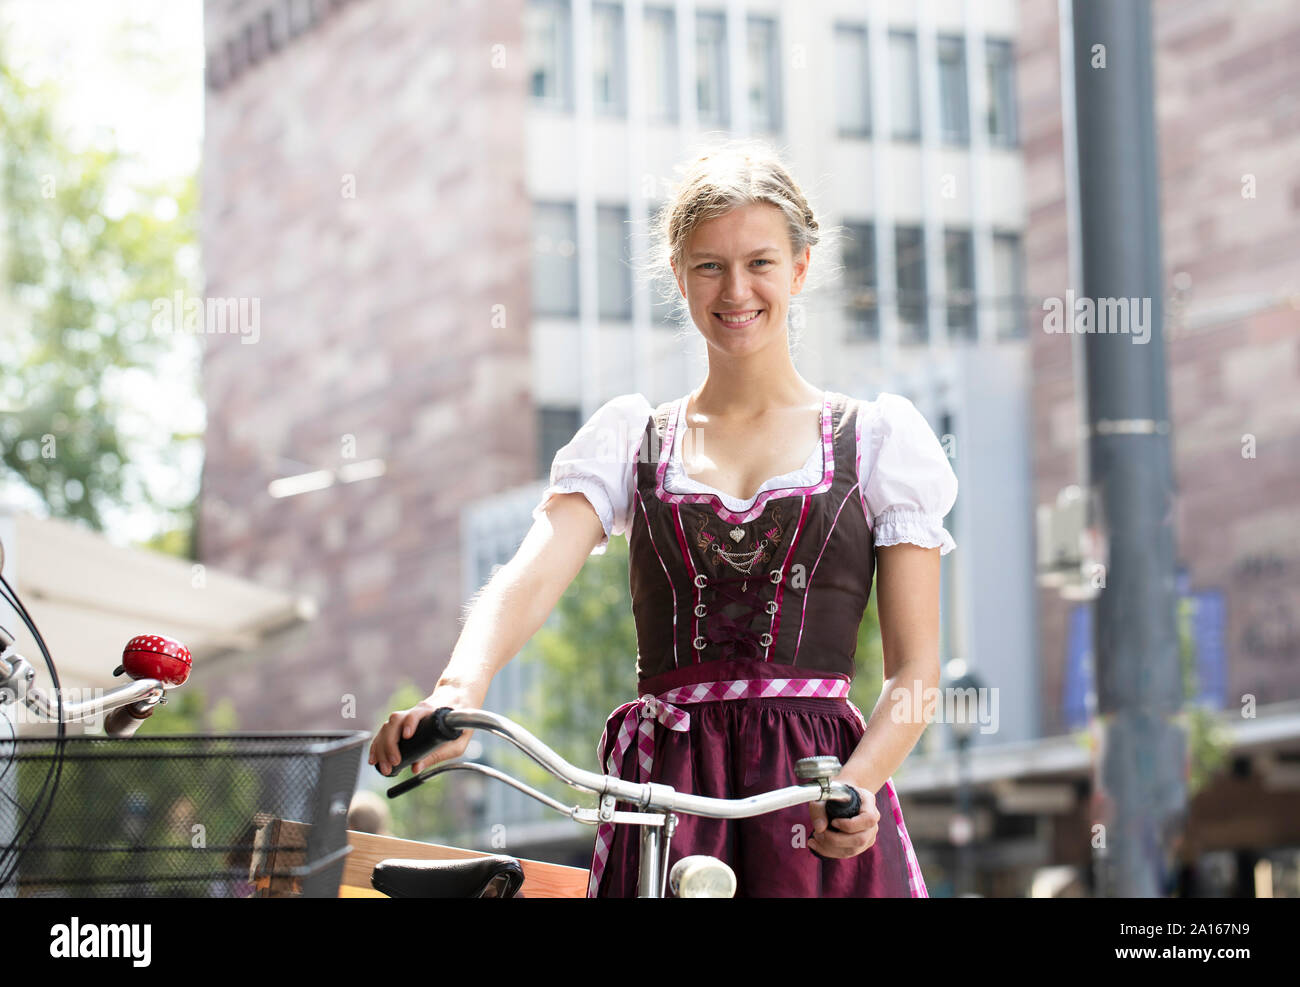 Portrait of smiling blonde woman with location port dirndl dans la ville, Freiburg, Allemagne Banque D'Images